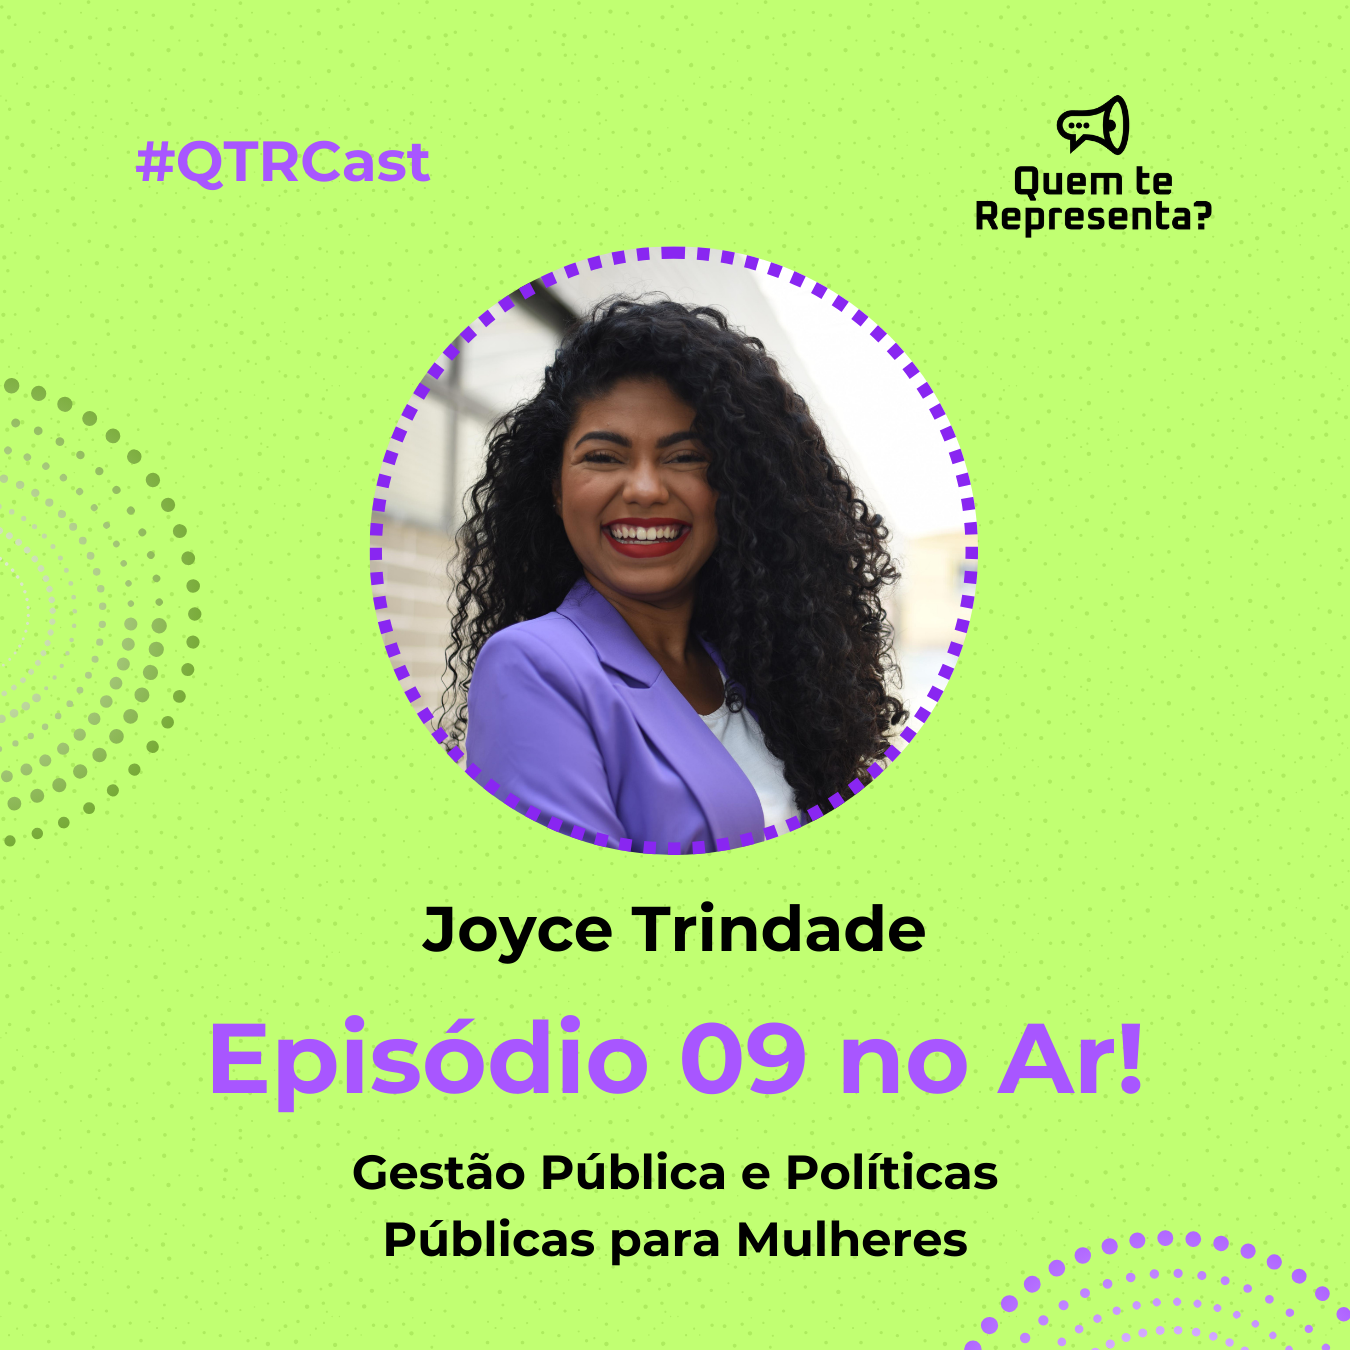 Entrevista com Joyce Trindade - Gestão Pública e Políticas Públicas para Mulheres Joyce é uma mulher jovem, negra, com cabelos pretos volumosos e está com um blazer branco, sorrindo na capa do episódio 10.